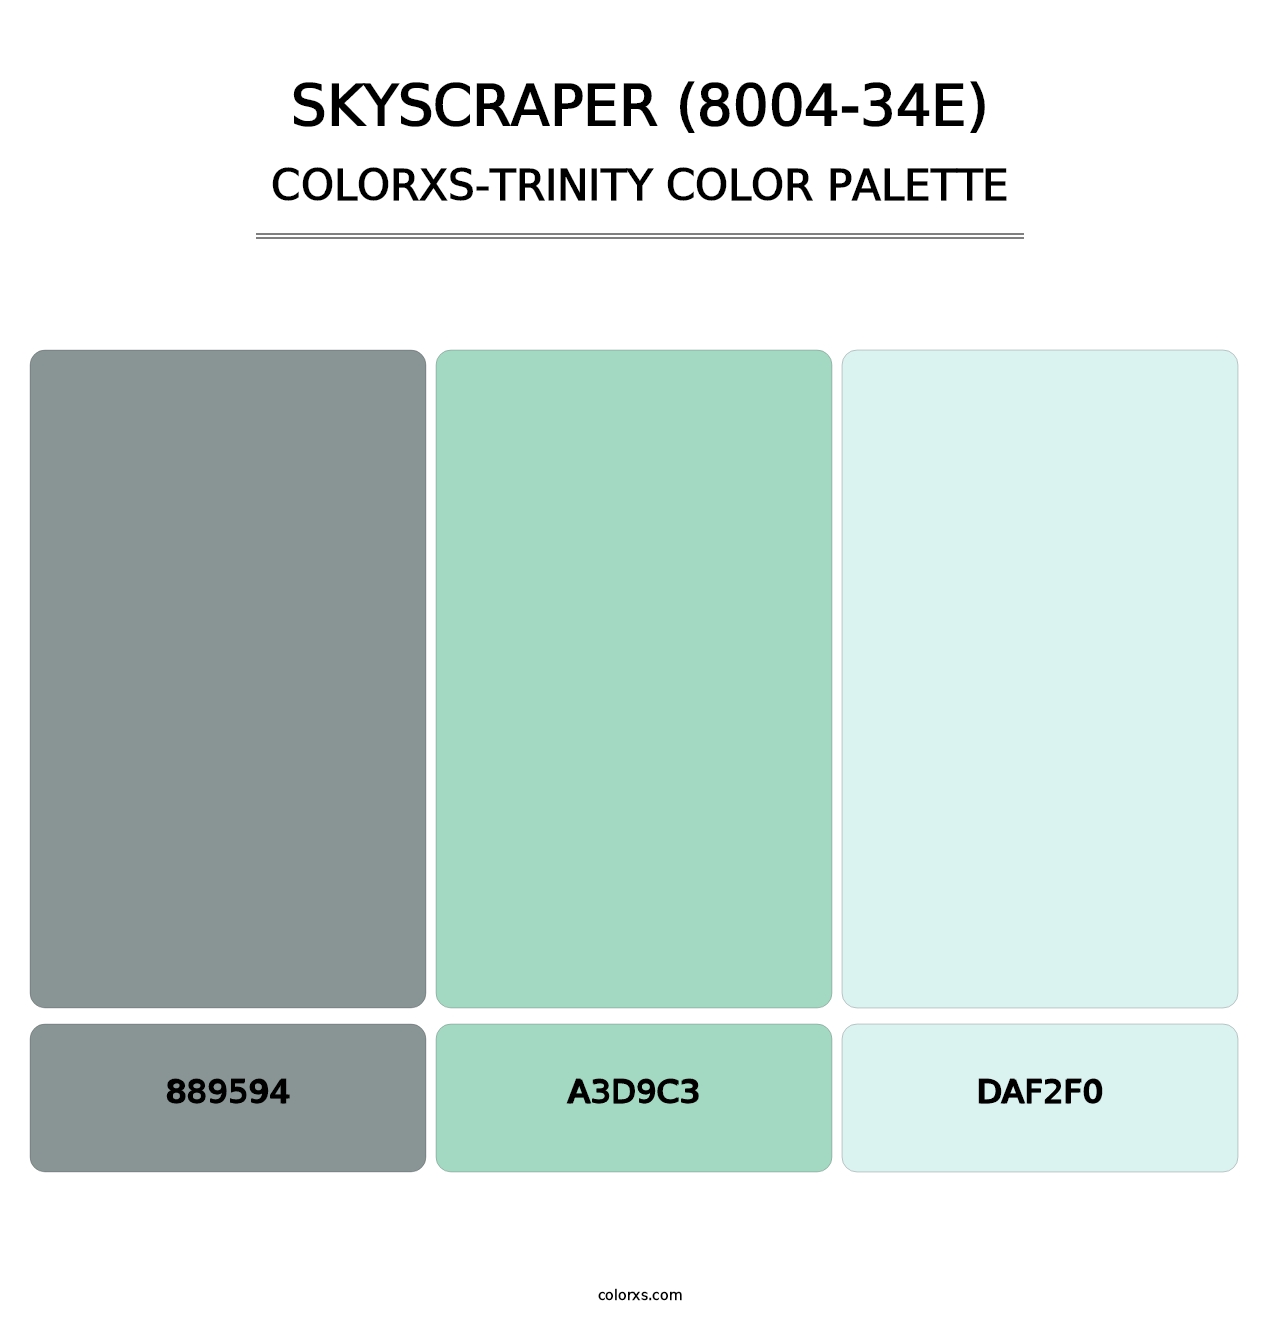 Skyscraper (8004-34E) - Colorxs Trinity Palette